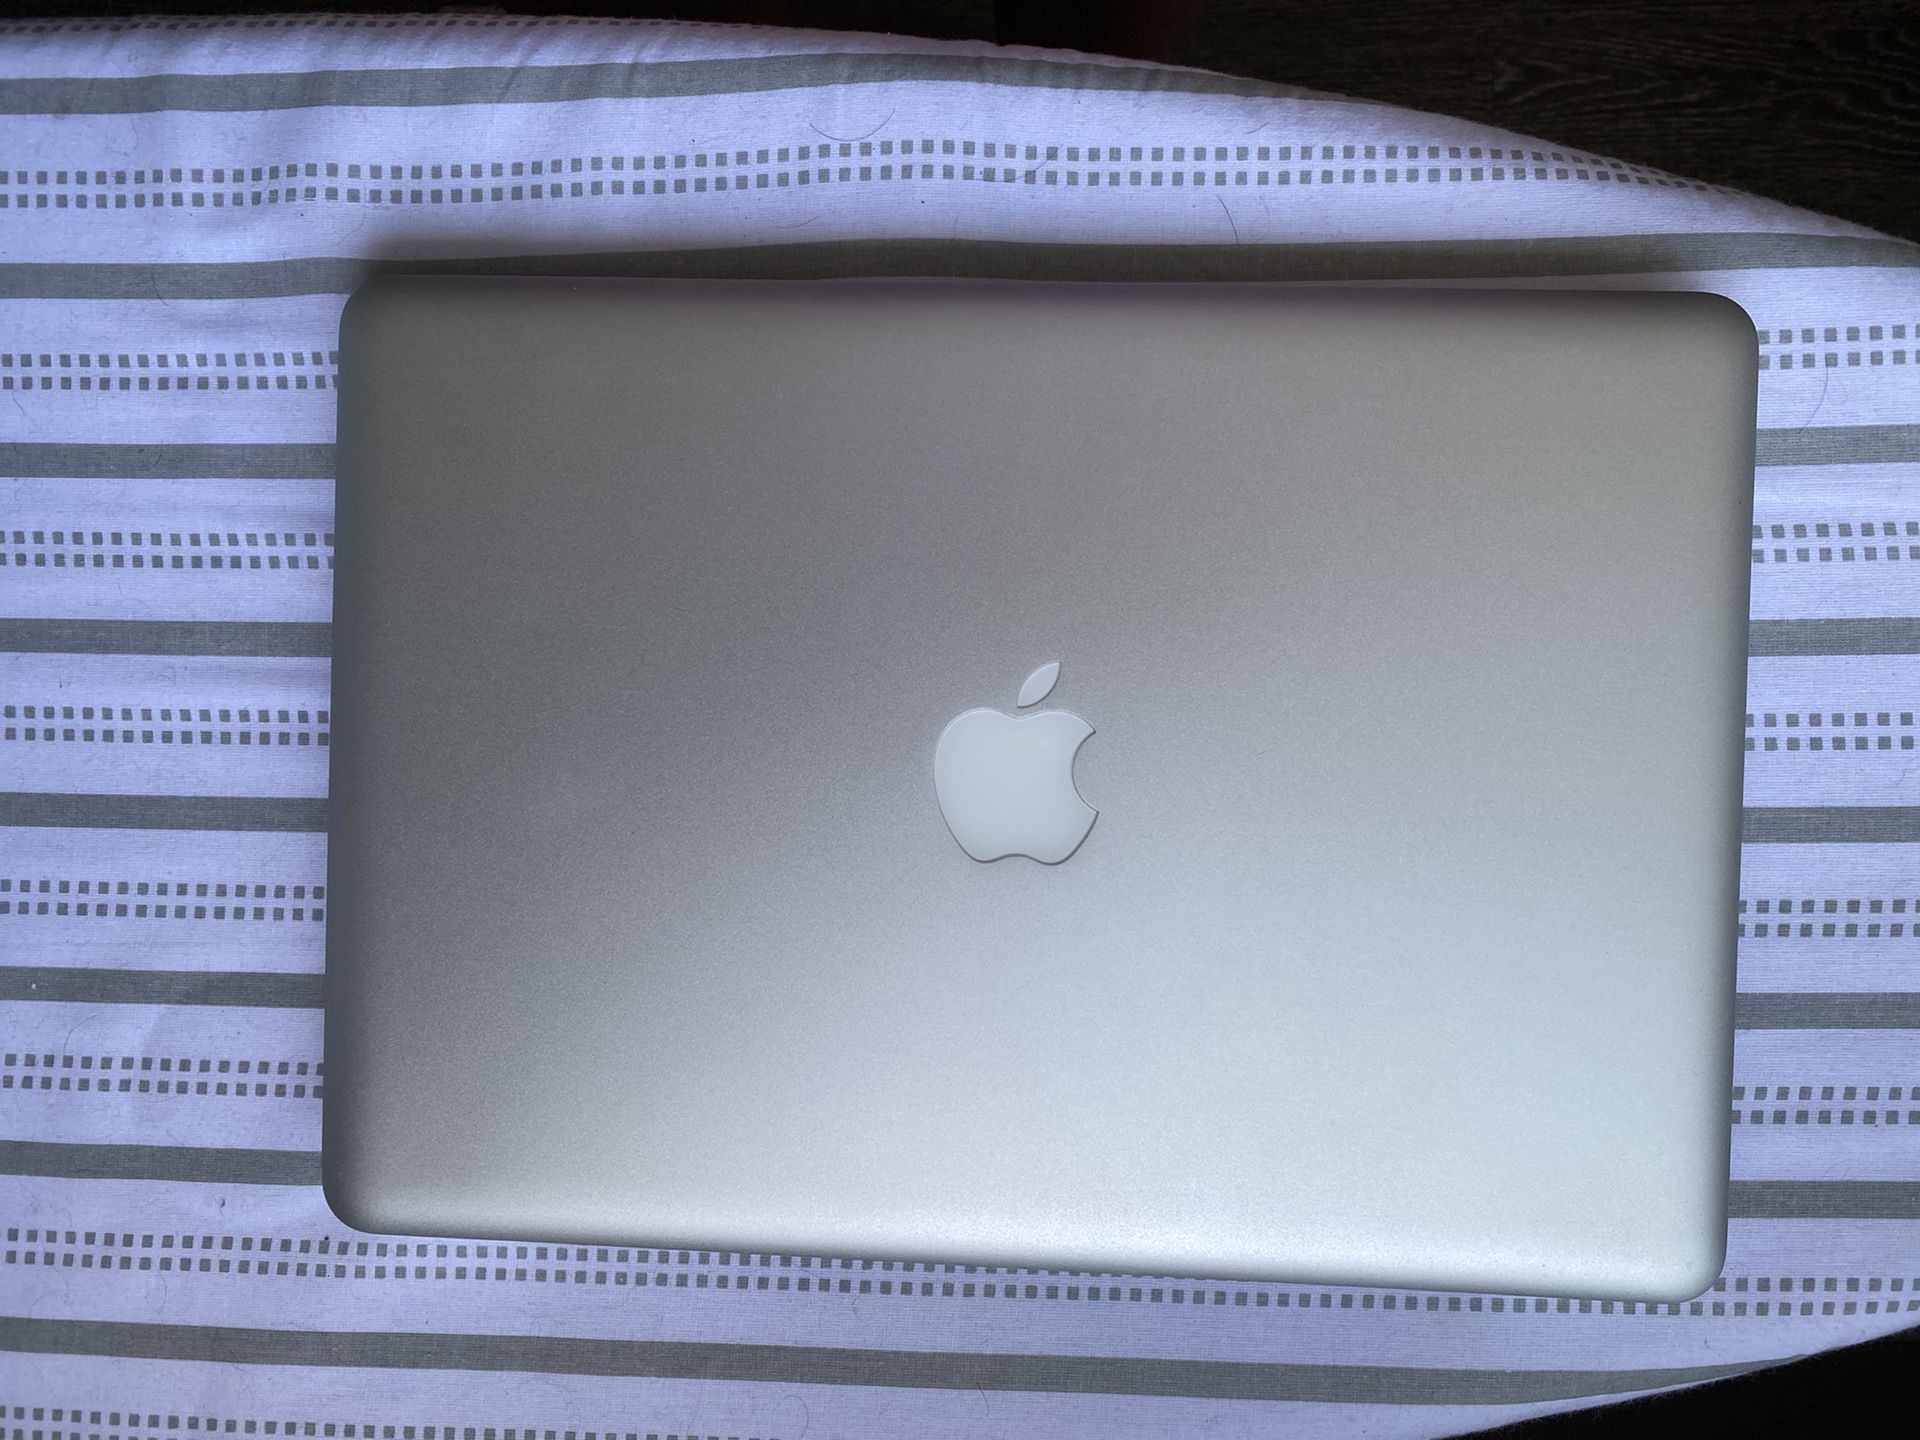 13.3-inch Apple MacBook Pro 2012